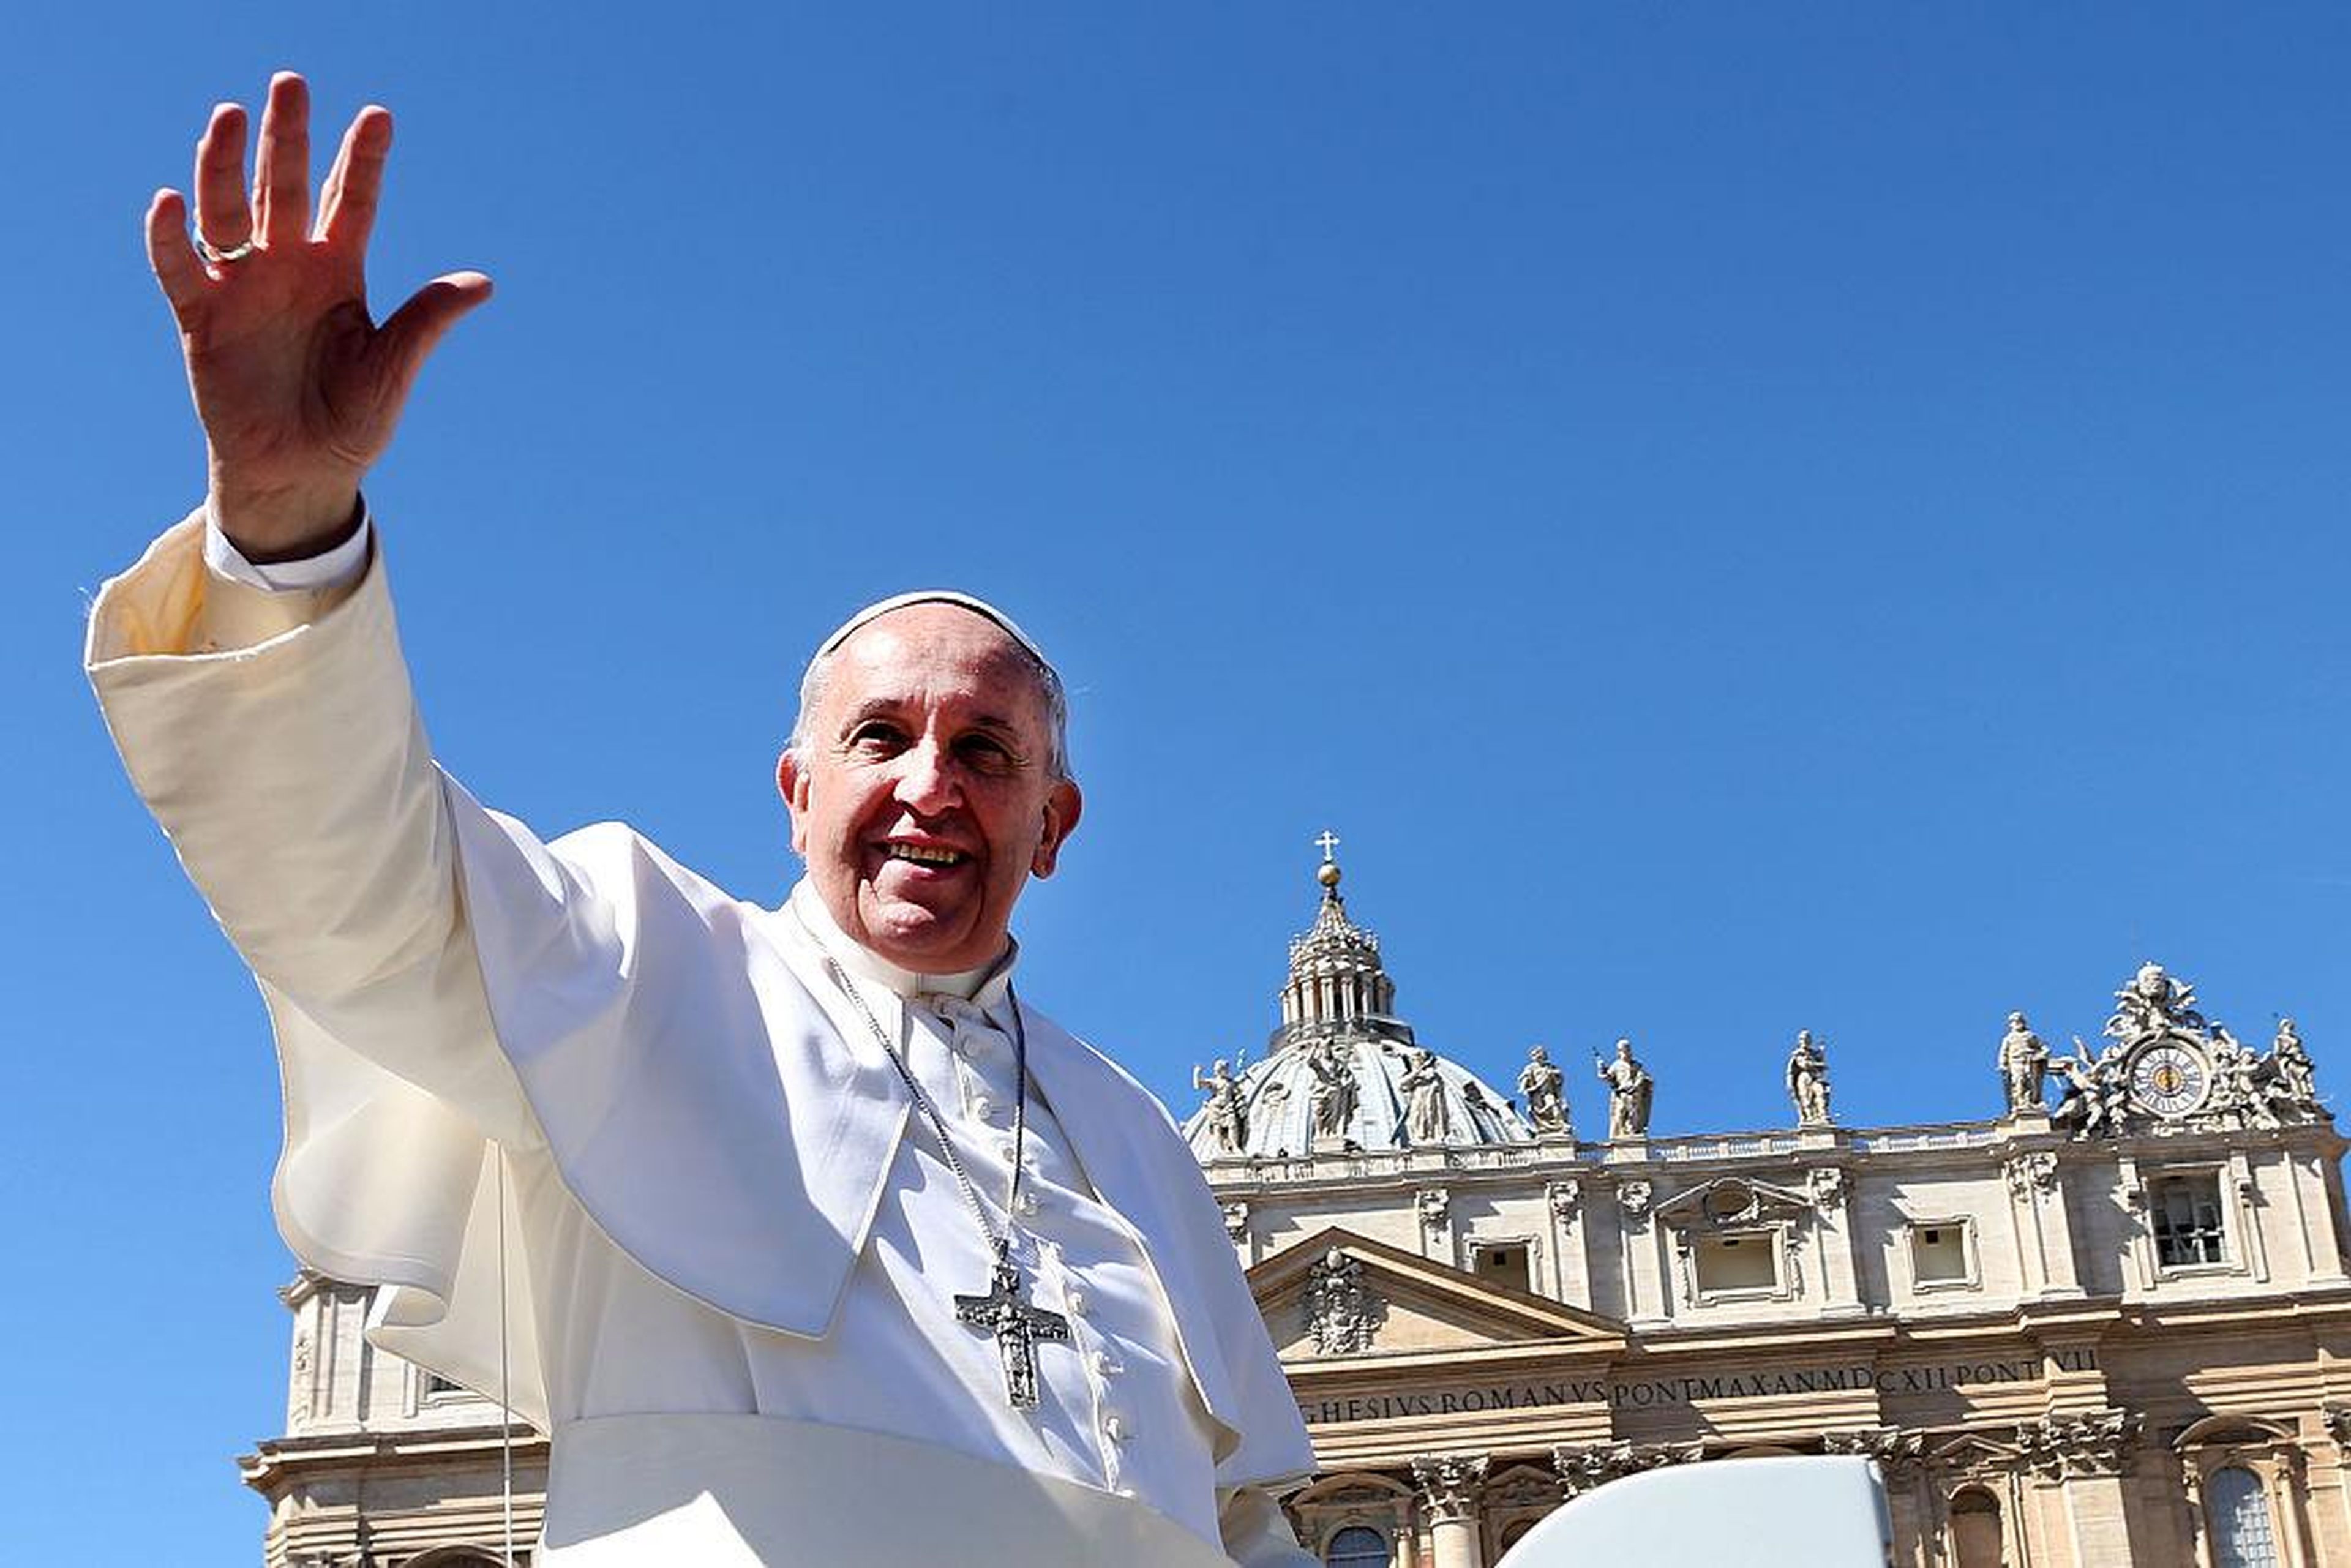 El Papa Francisco saluda a los fieles cuando sale de la Plaza de San Pedro al final de la Misa del Domingo de Ramos el 29 de marzo de 2015 en la Ciudad del Vaticano, Vaticano.